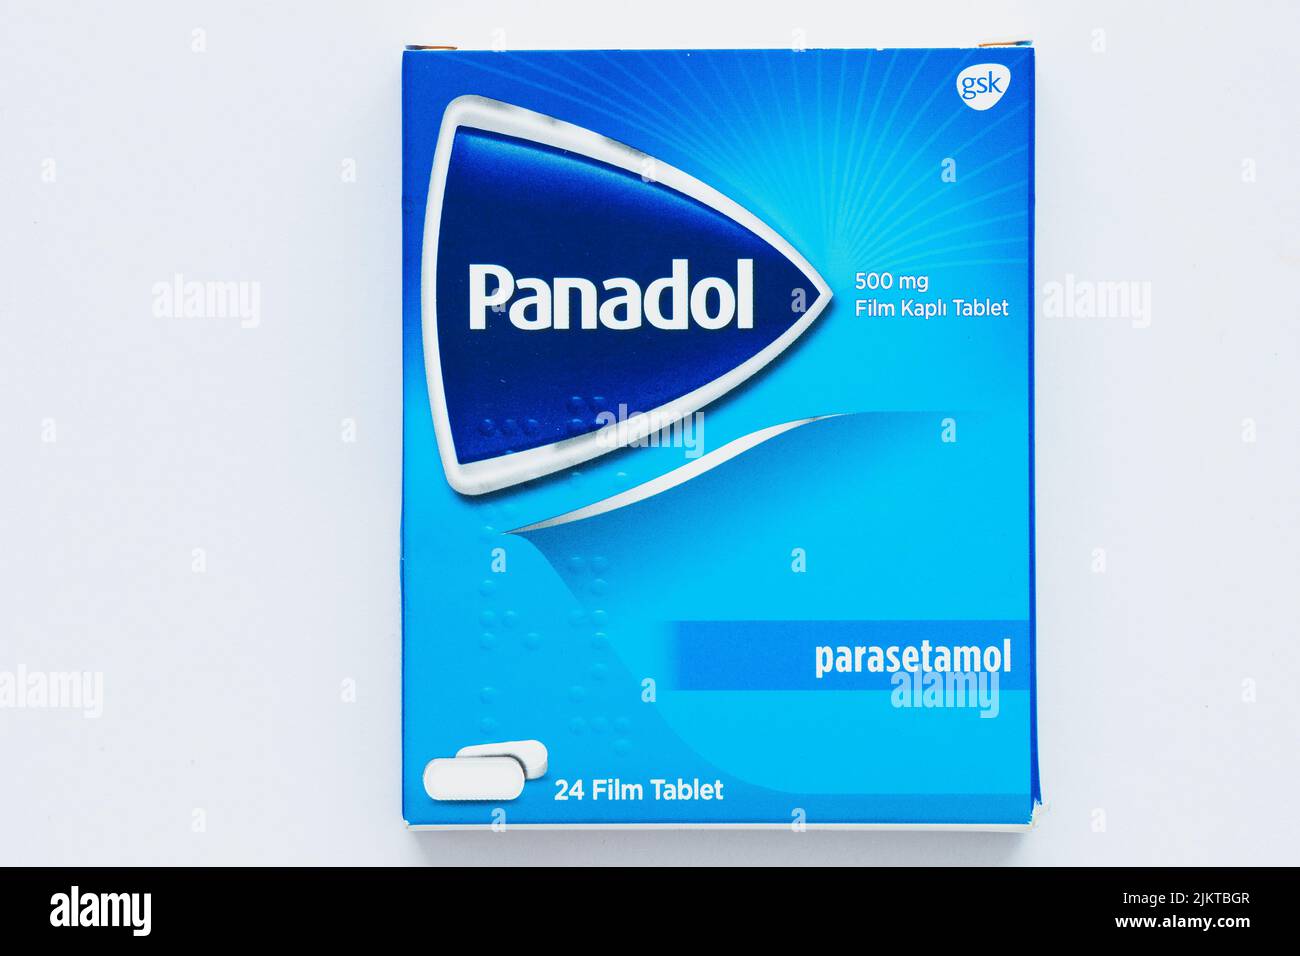 10 Junio 2022, Antalya, Turquía: Panadol paquete de medicación - es un asesino popular del dolor y la píldora del tratamiento de la fiebre Foto de stock